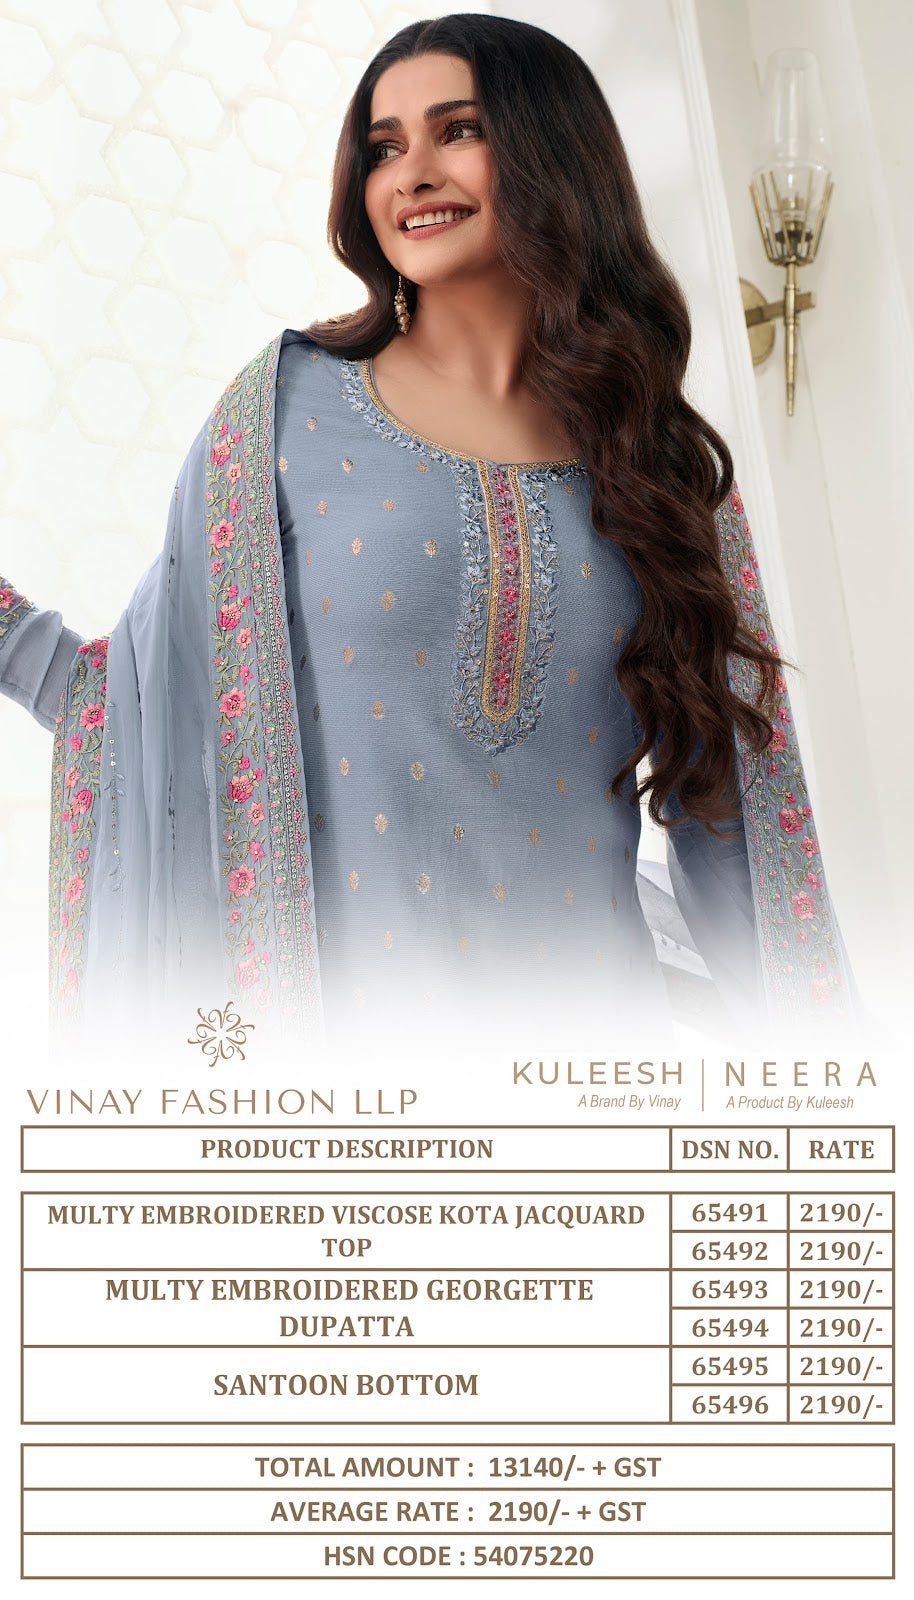 Neera Kuleesh Vinay Fashion Llp Viscose Pant Style Suits